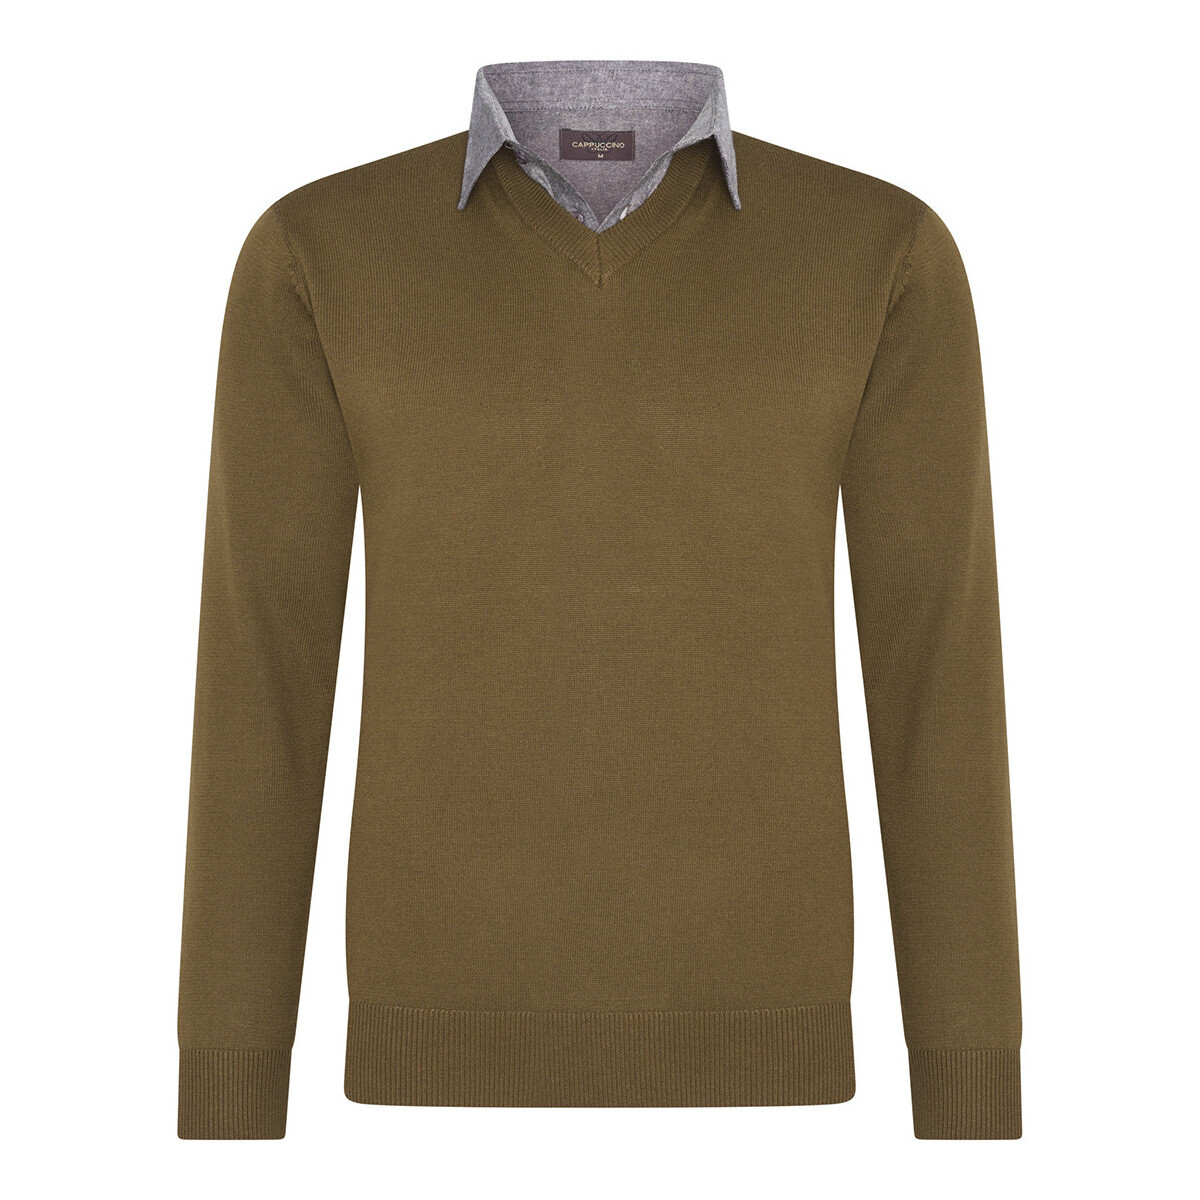 Textiel Heren Sweaters / Sweatshirts Cappuccino Italia Mock Pullover Bruin